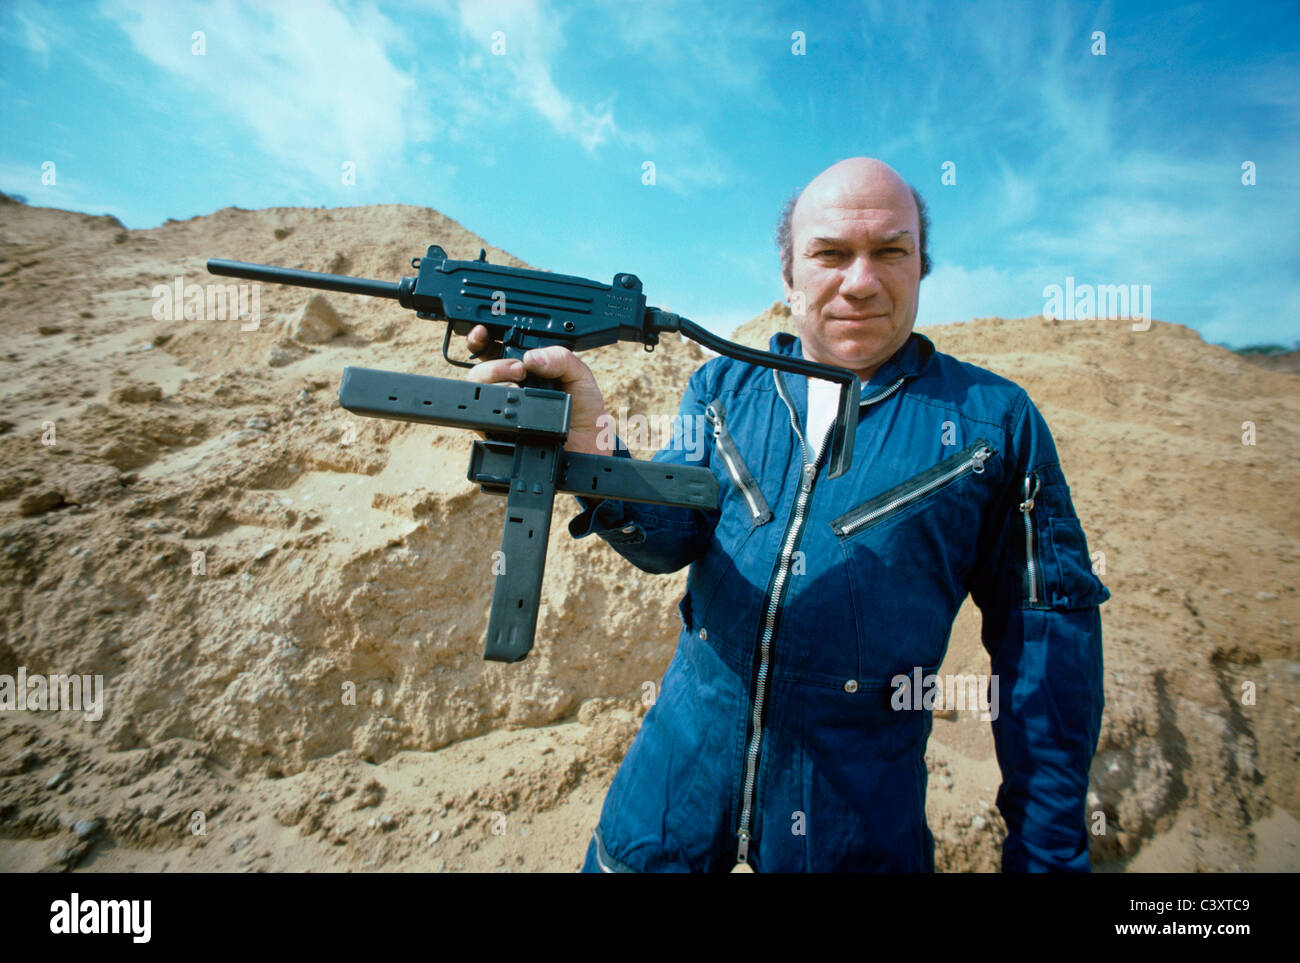 Uziel Gal, le concepteur et l'homonyme de pistolet-mitrailleur Uzi, tenant une mini-uzi pistolet à un croisement de magazine. Israël Banque D'Images